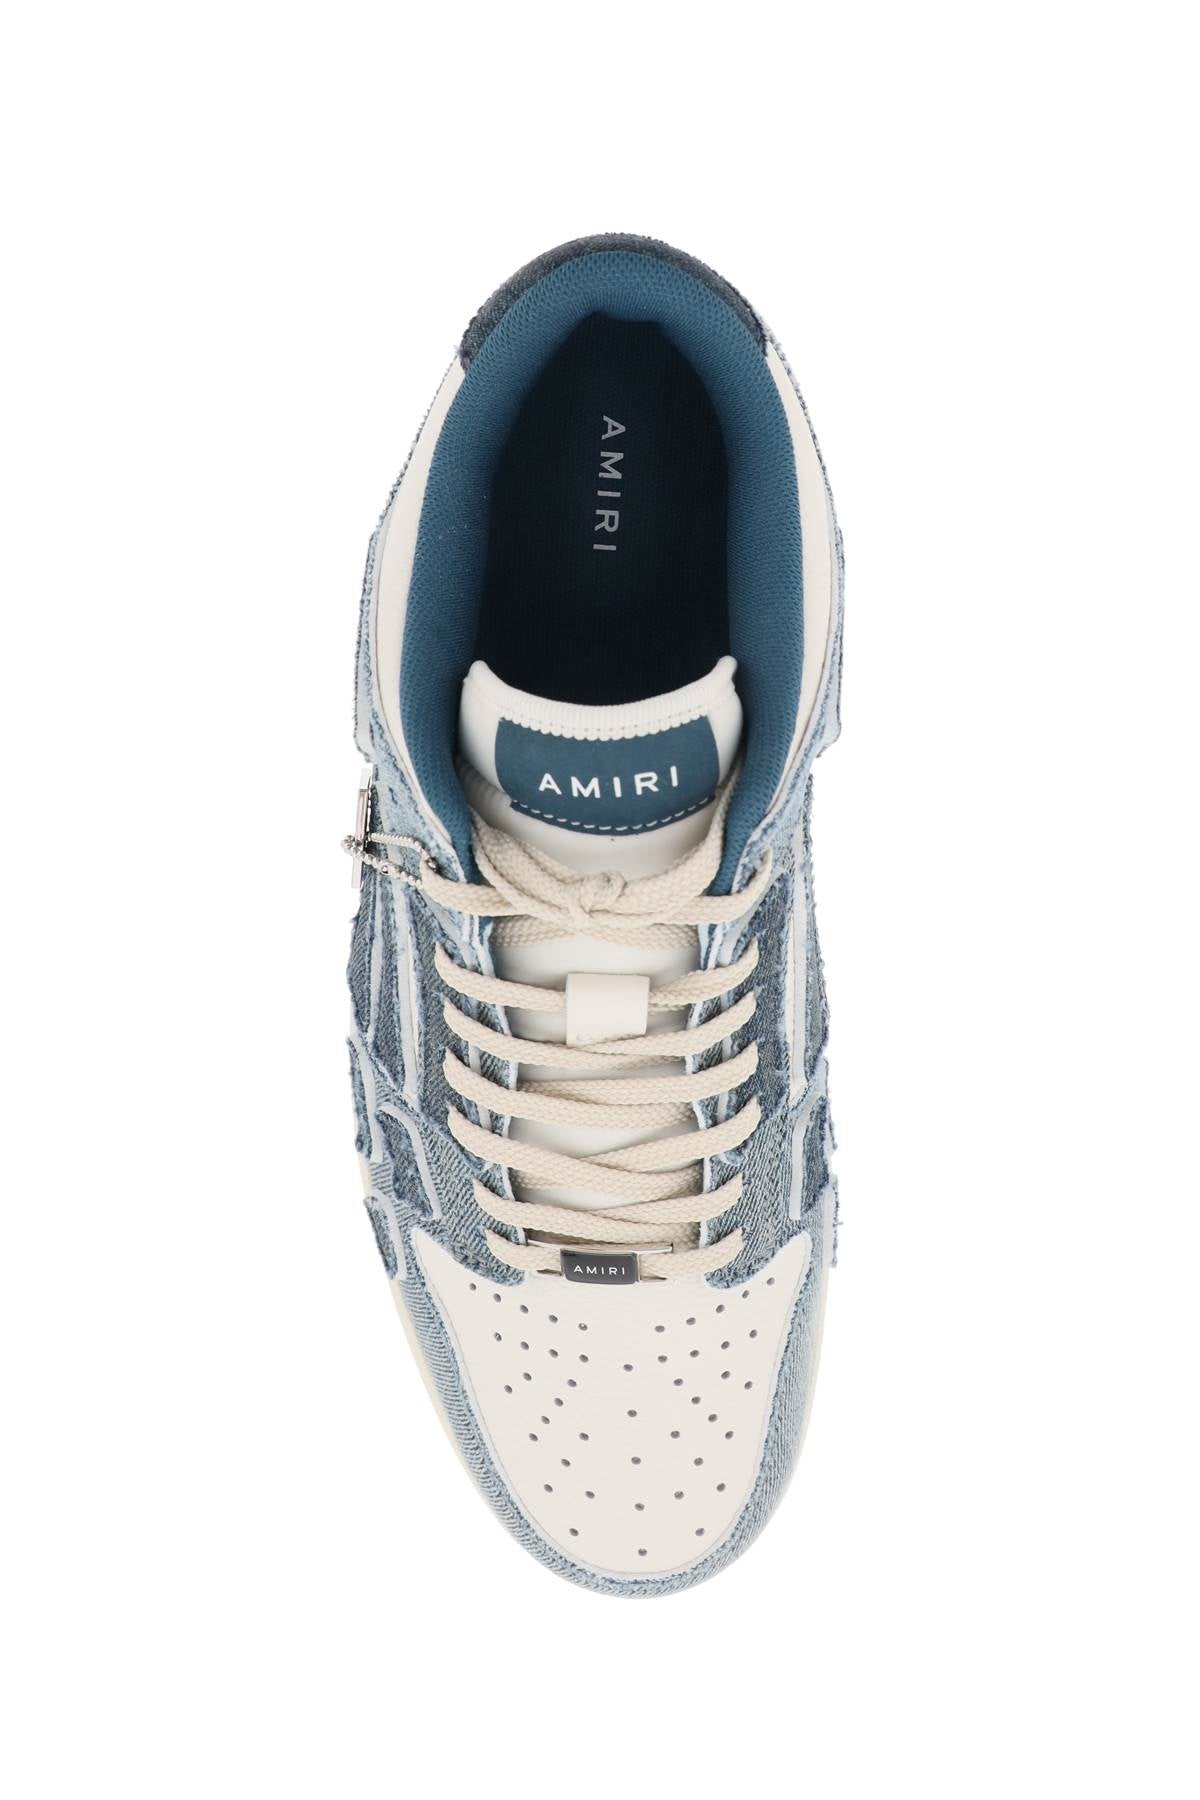 Amiri Top Low 'Skel' Sneakers   White